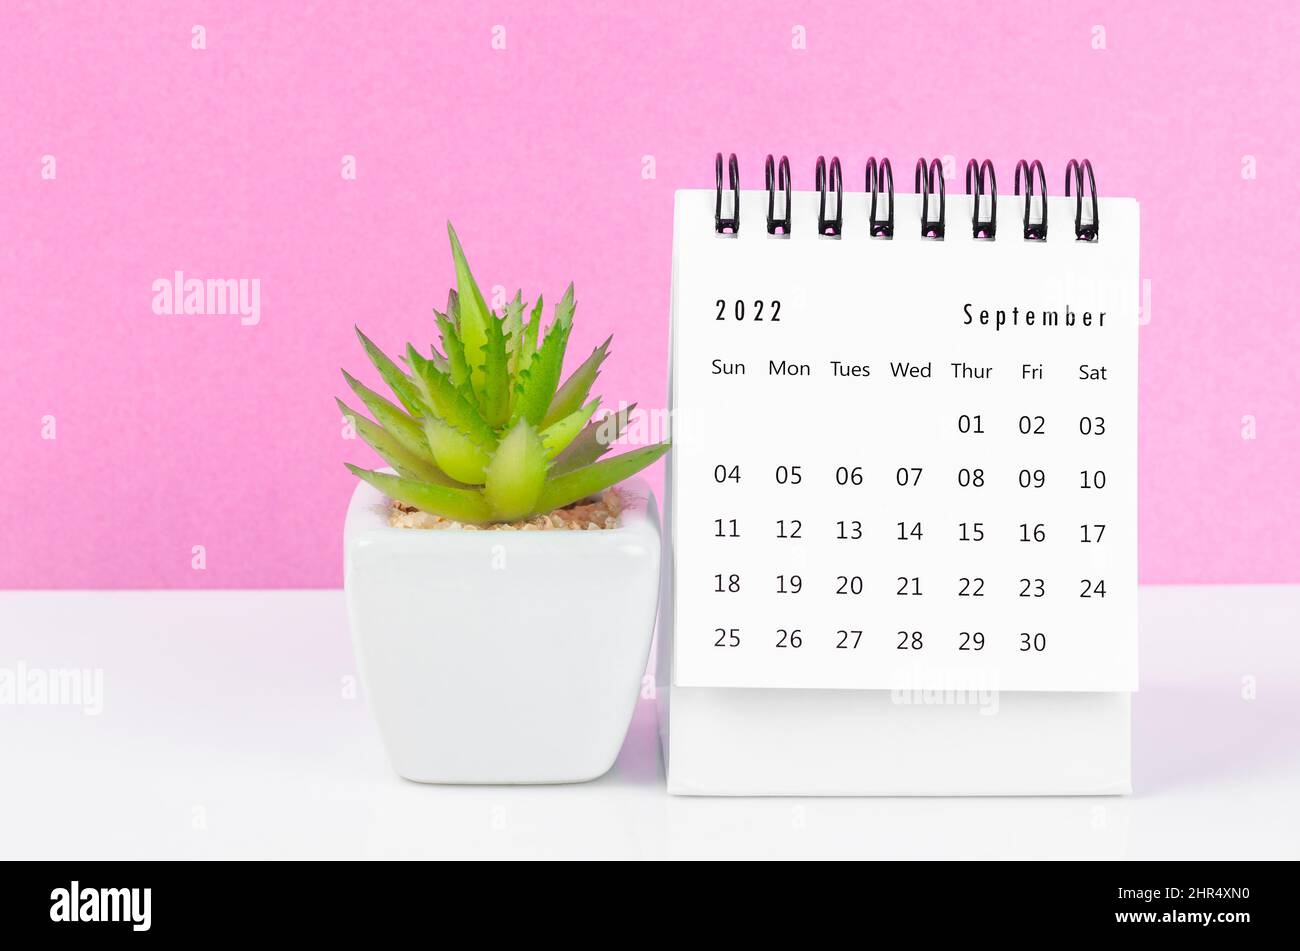 Lịch bàn tháng 9 năm 2022 thực sự là một món đồ văn phòng cần thiết. Những hình ảnh đẹp mắt và phong cách tinh tế của lịch bàn sẽ giúp bạn thêm yêu thích thời gian làm việc. Hãy nhấp vào hình ảnh để tham khảo và chọn cho mình một lịch bàn phù hợp với gu của mình nhé!